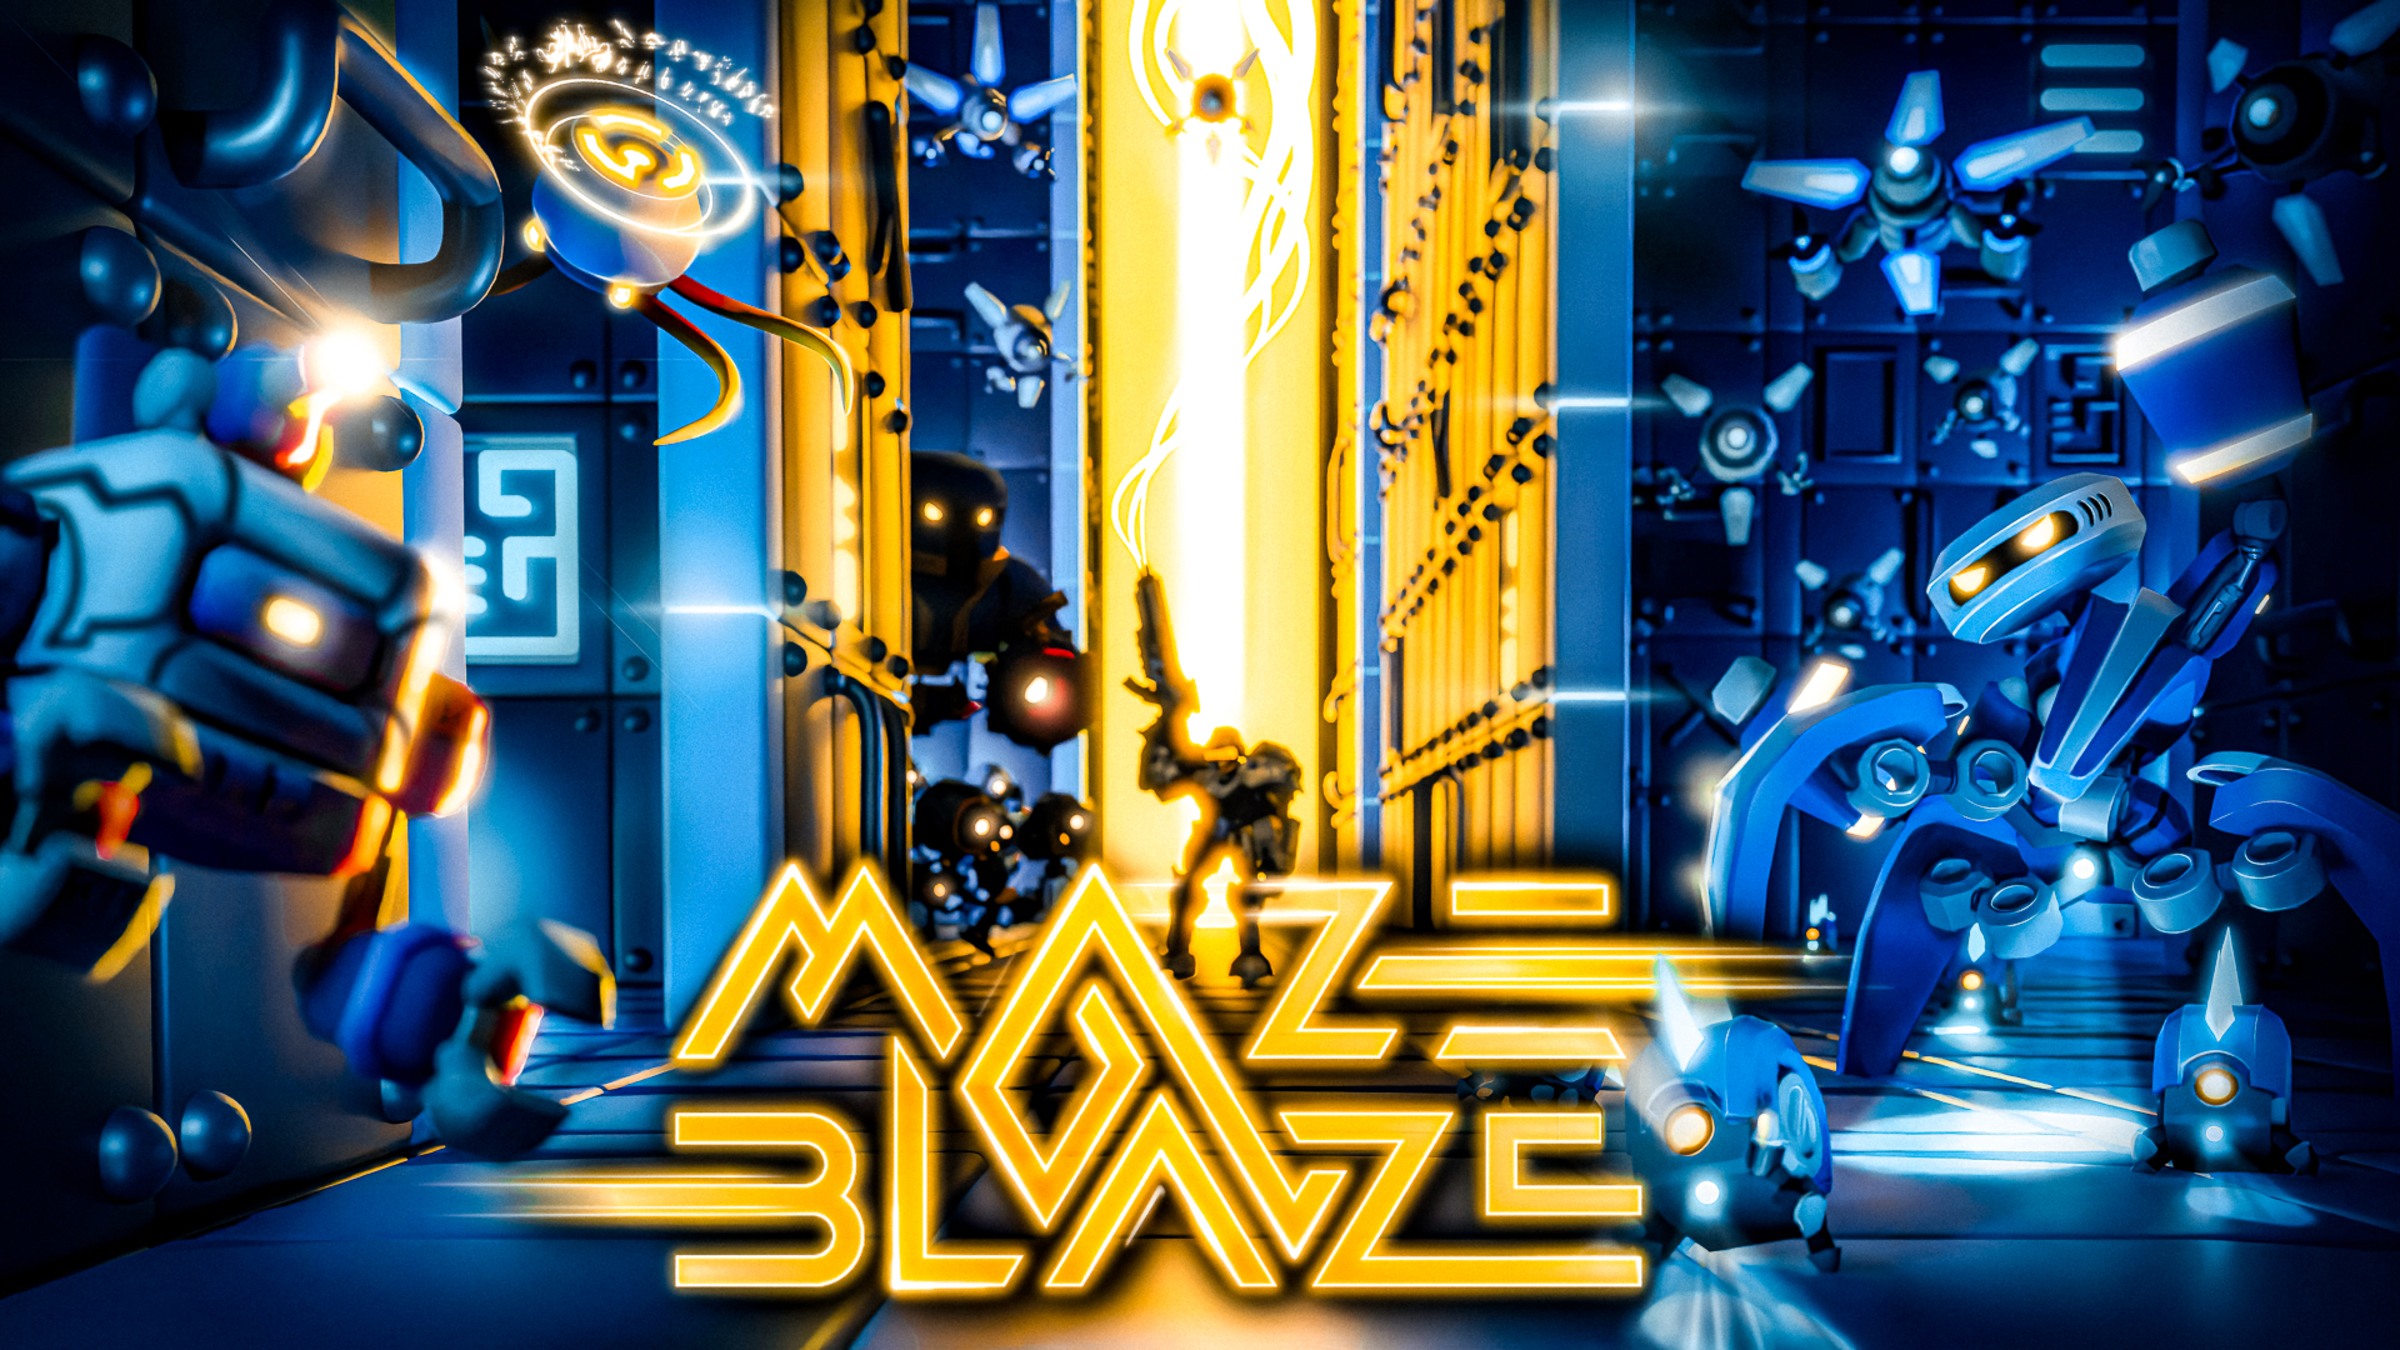 Maze Blaze for Nintendo Switch